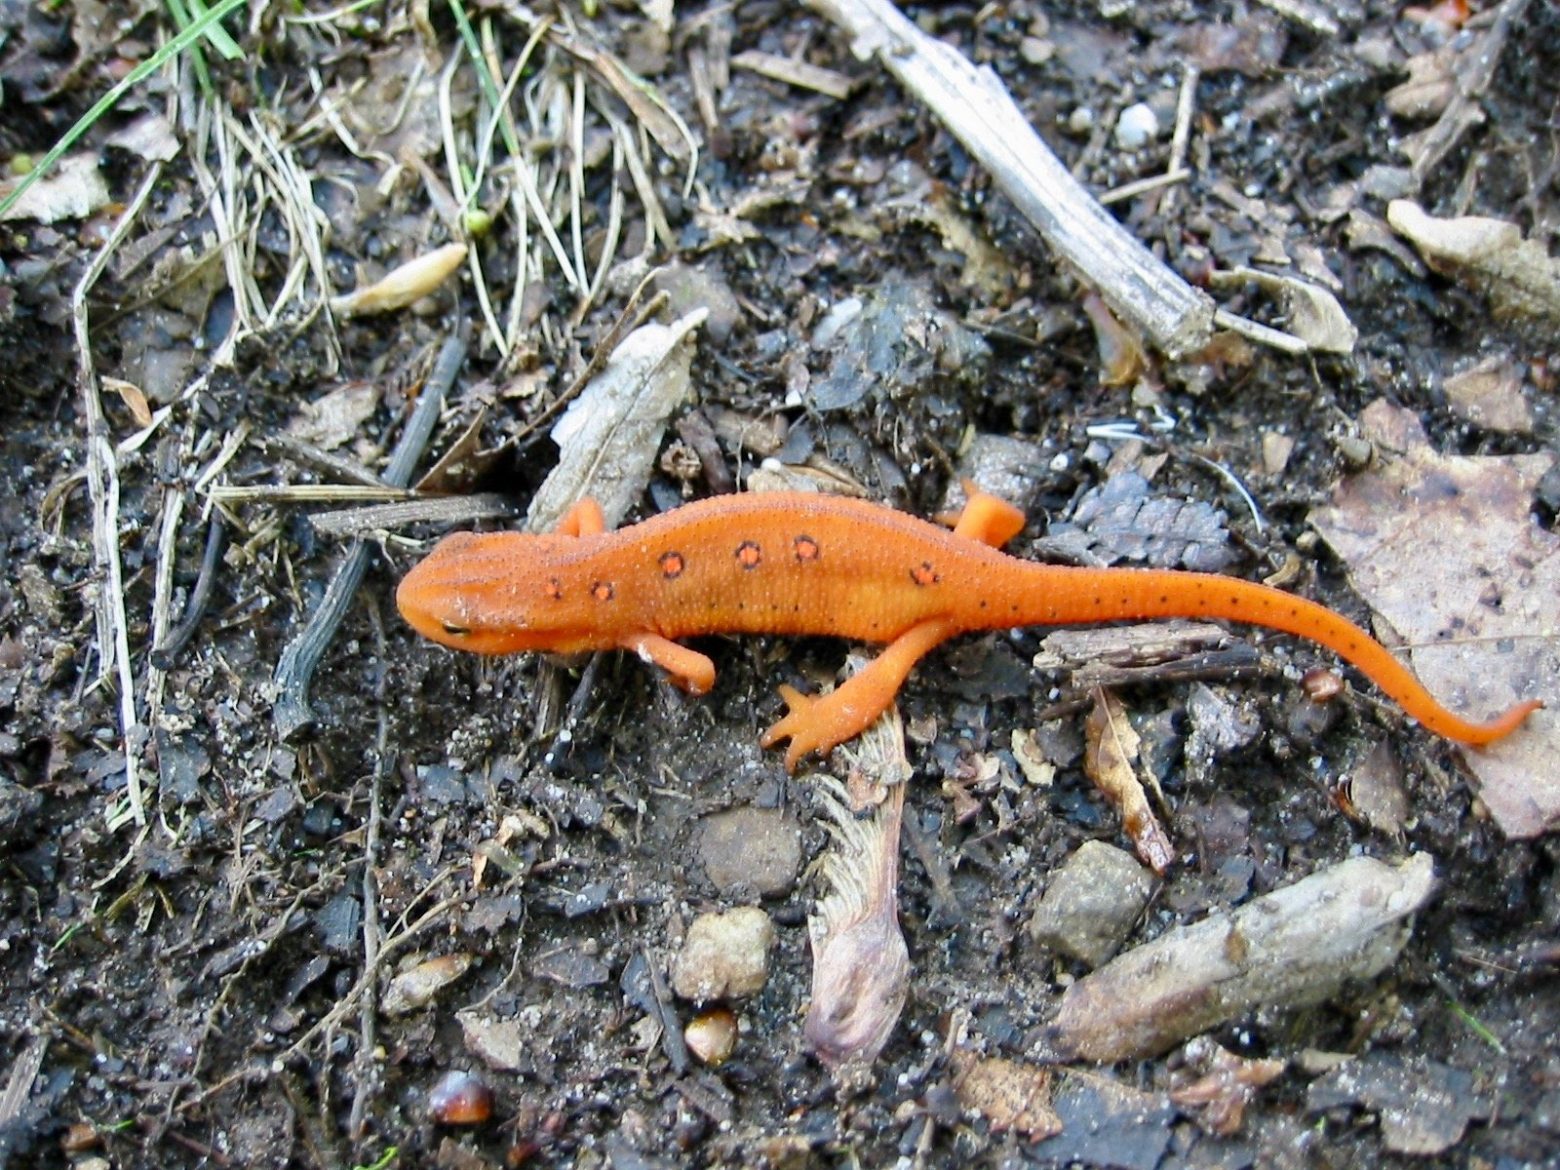 Orange salamander crossing the trail